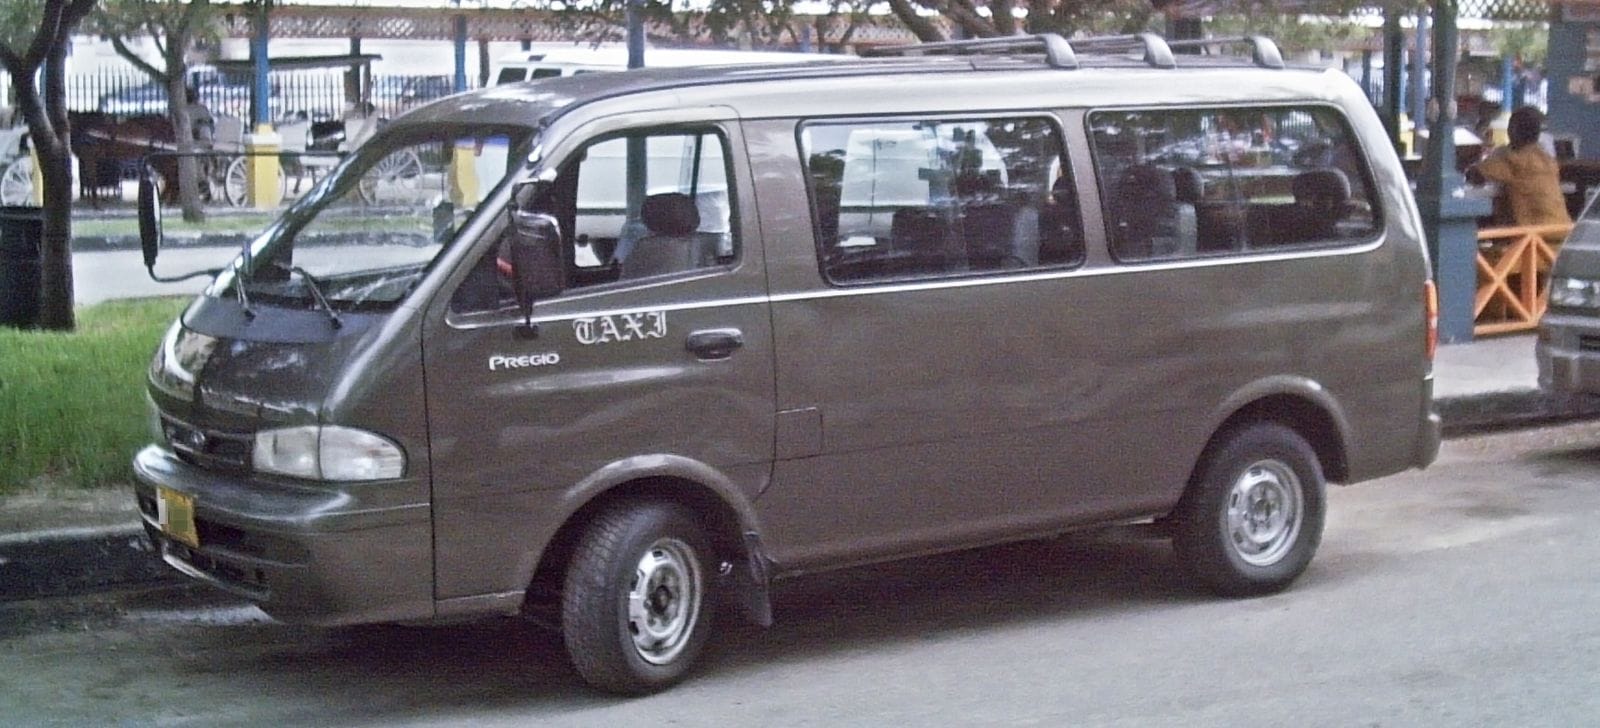 Такси на улицах Нассау